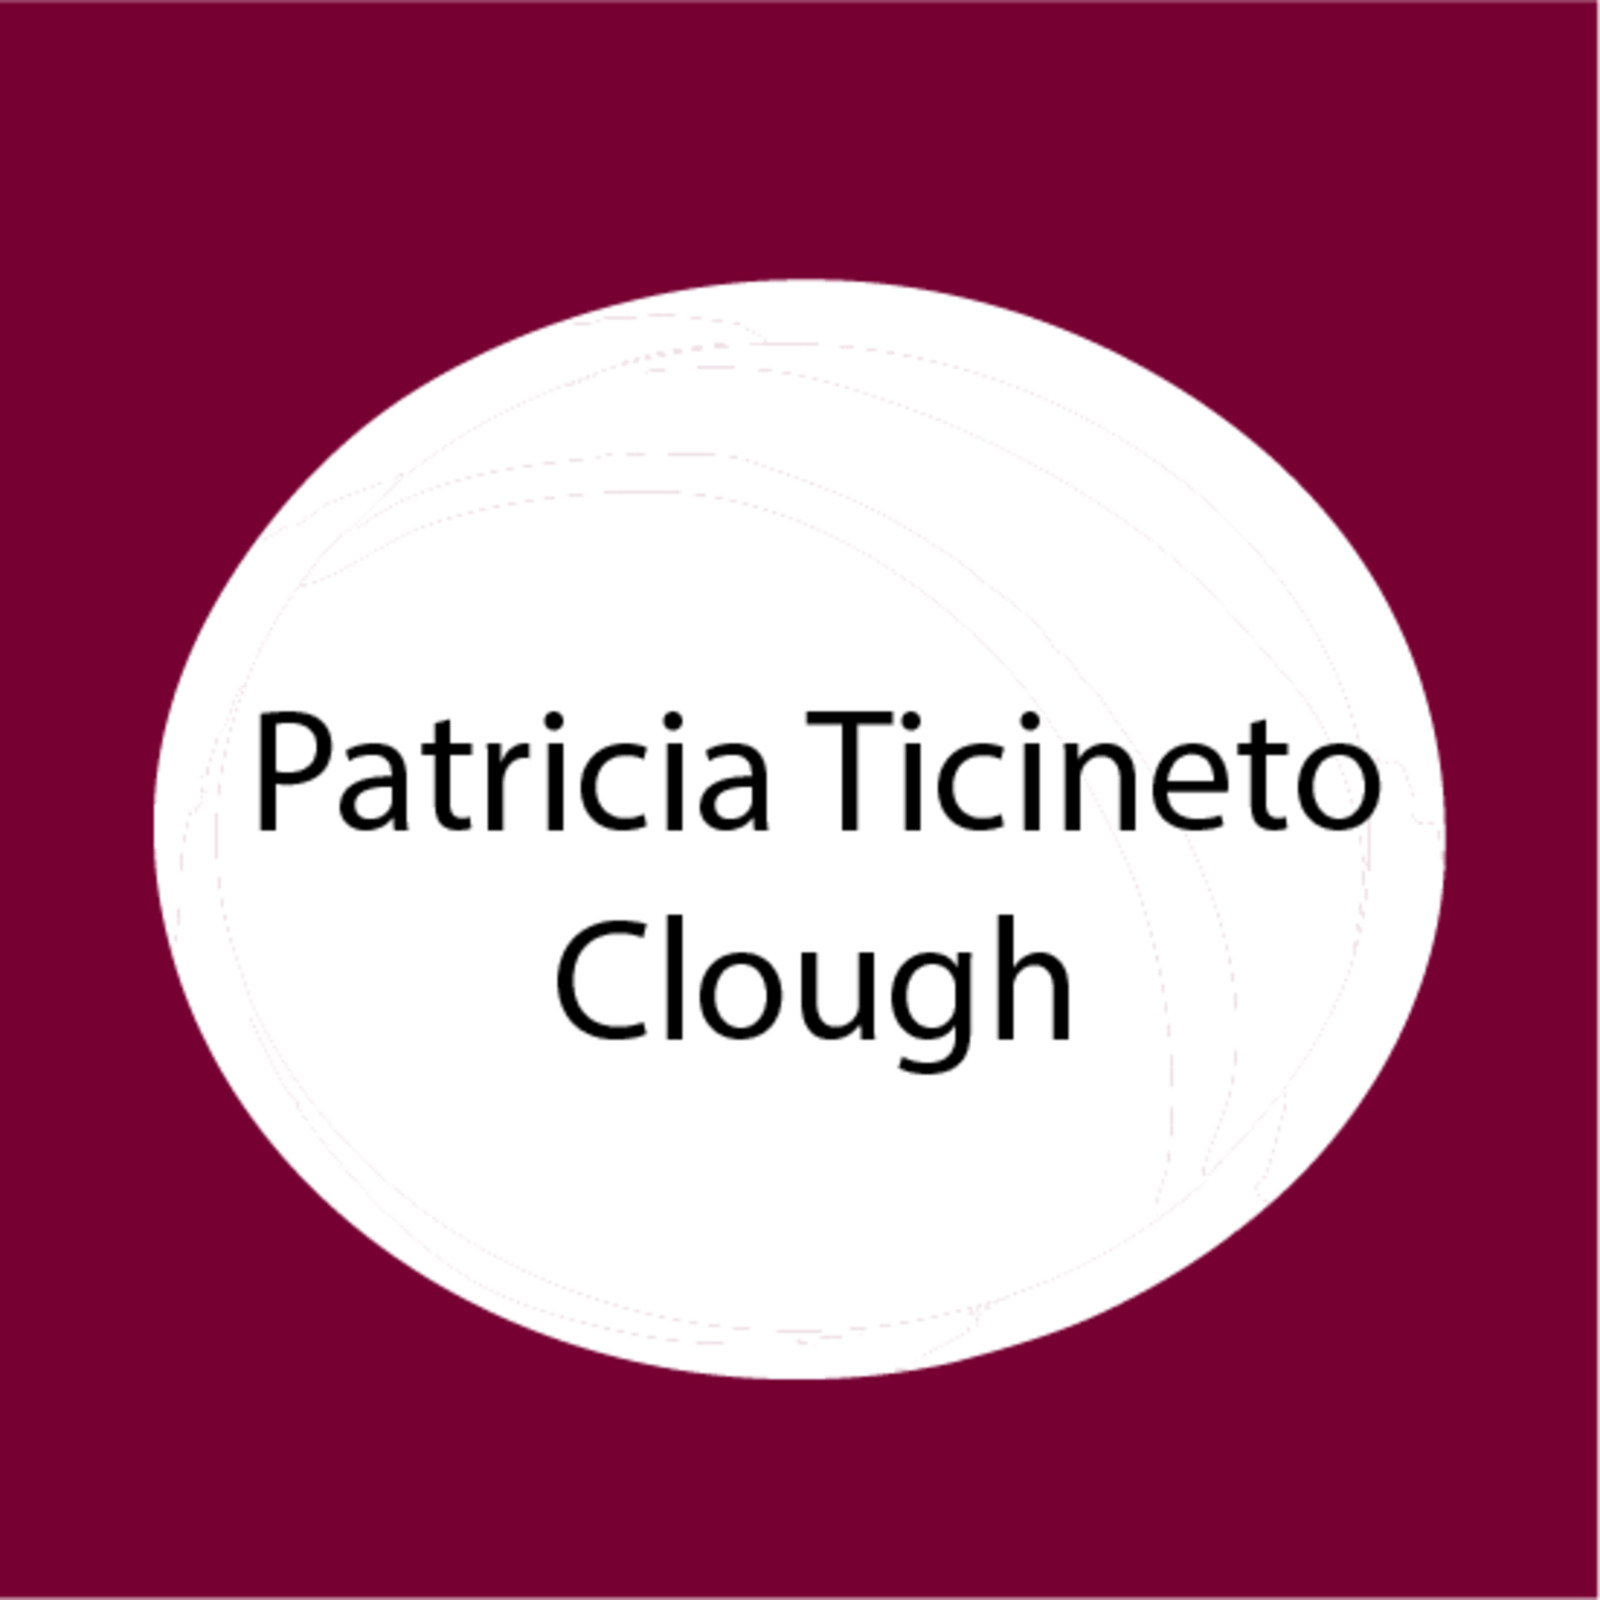 Patricia Ticineto Clough